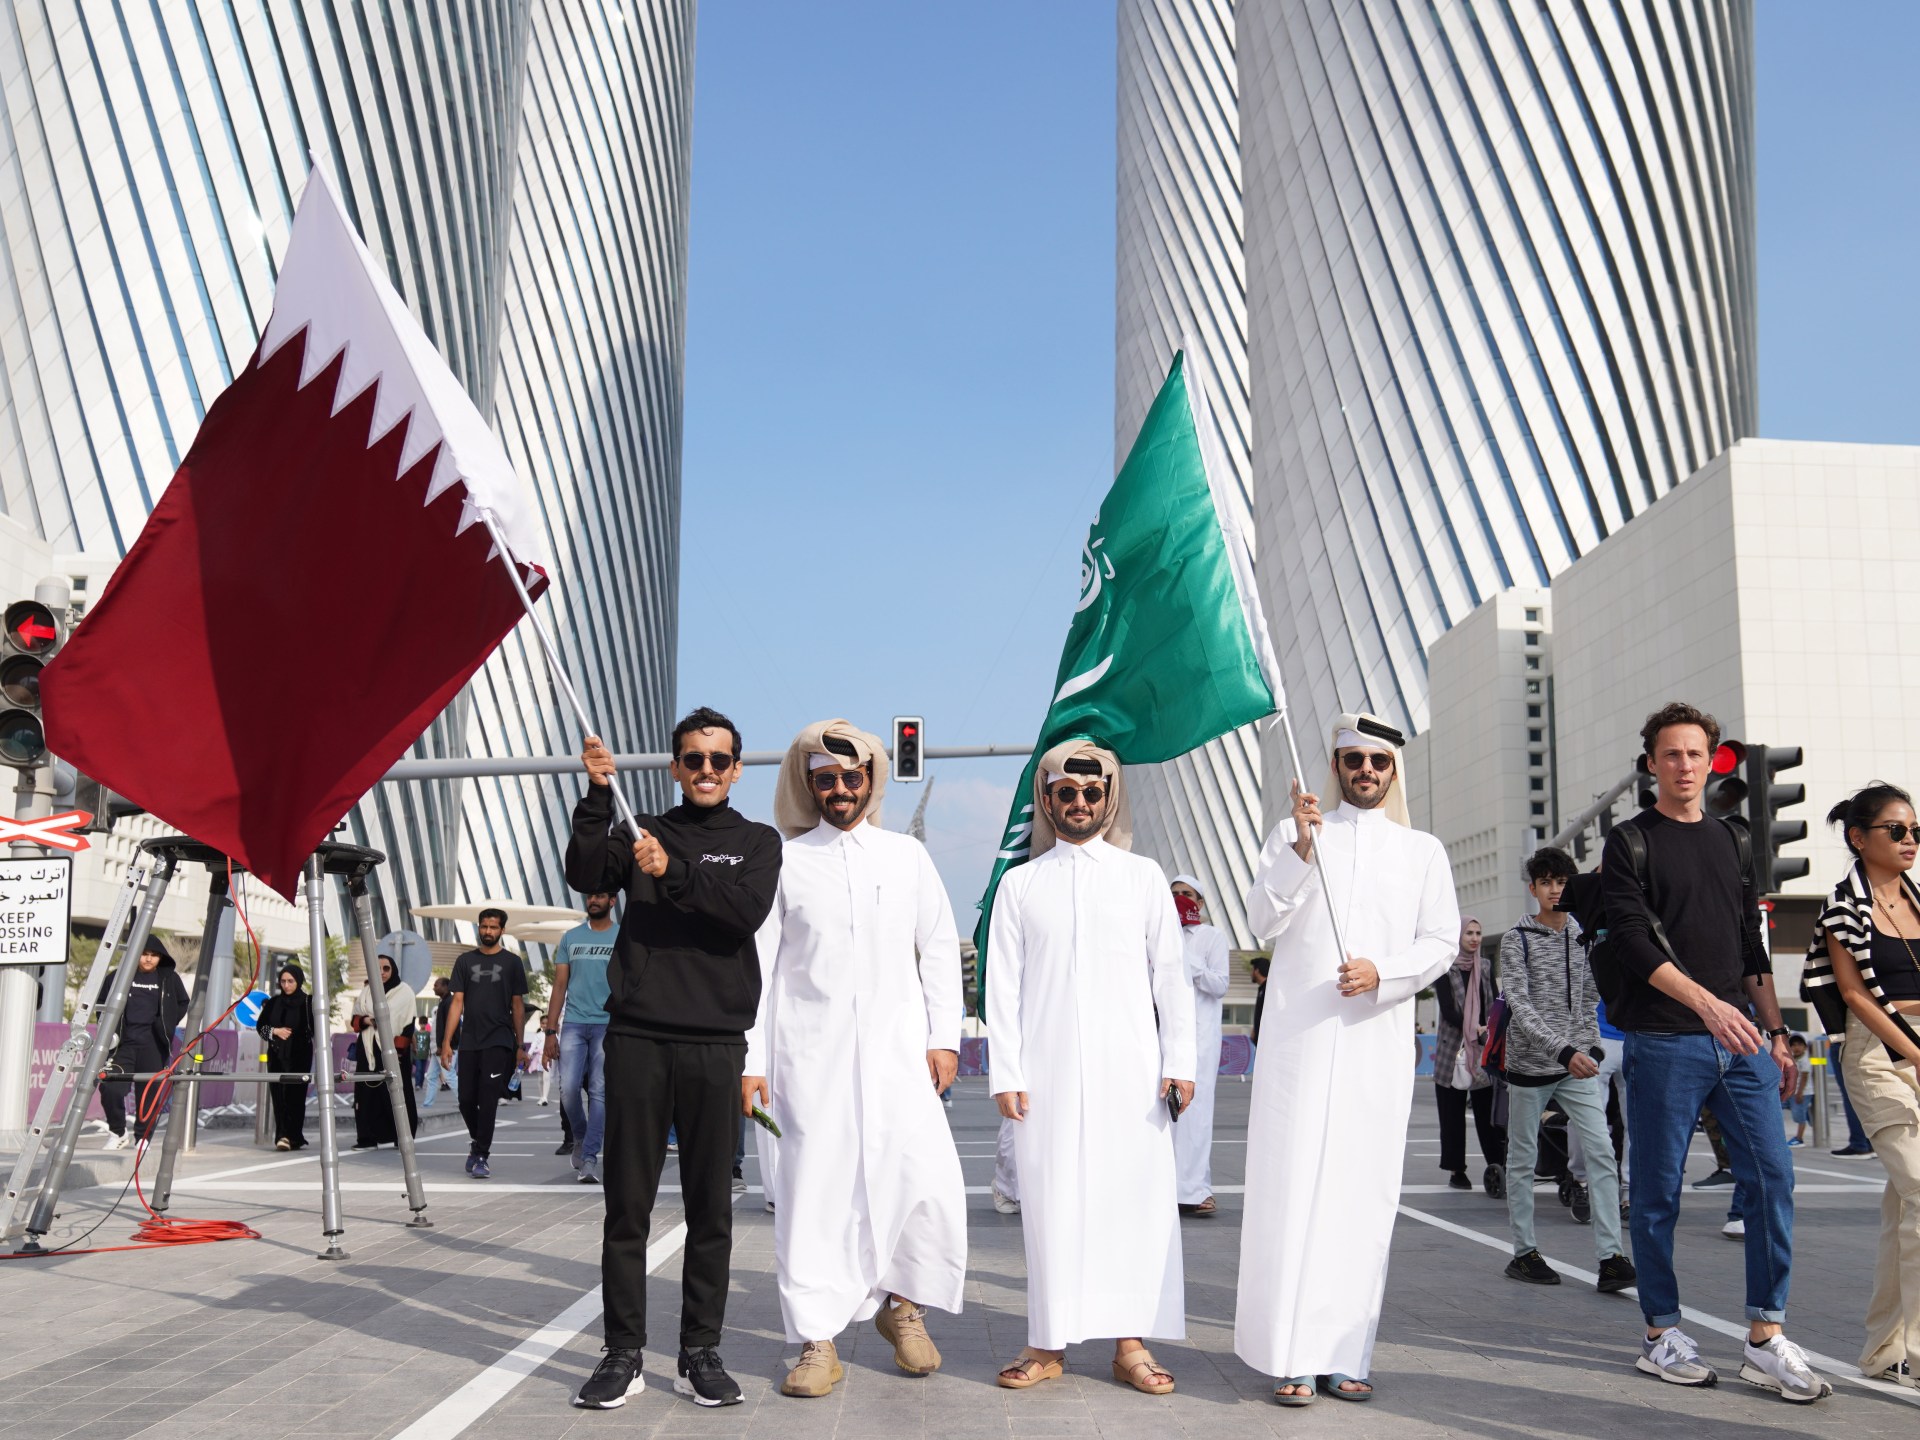 Les finales de la Coupe du monde stimulent les célébrations de la fête nationale au Qatar |  En images Actualités